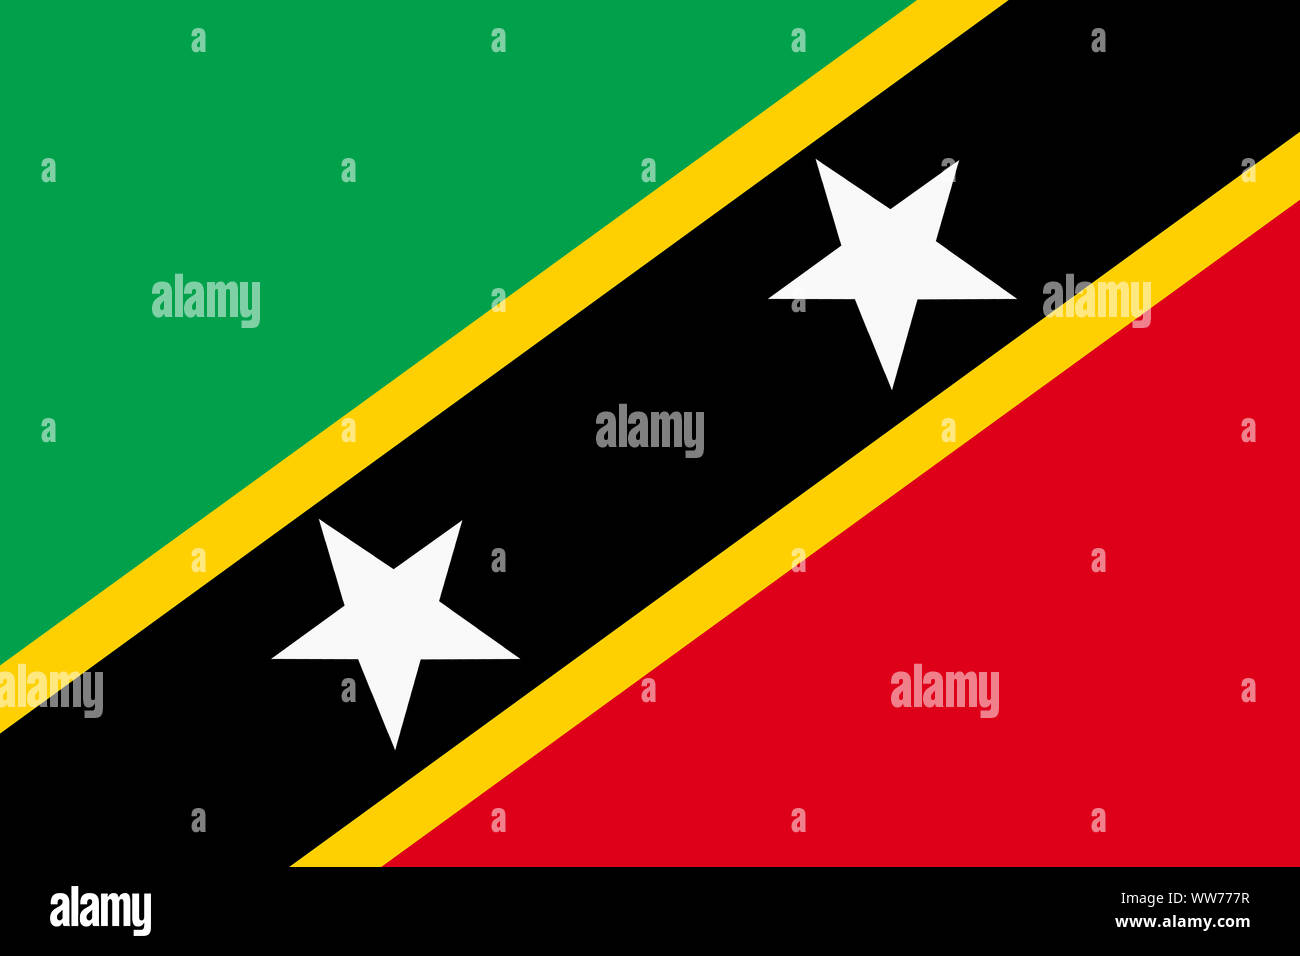 Un Saint Kitts et Nevis background illustration drapeau rouge vert jaune rayures diagonales étoiles blanches Banque D'Images